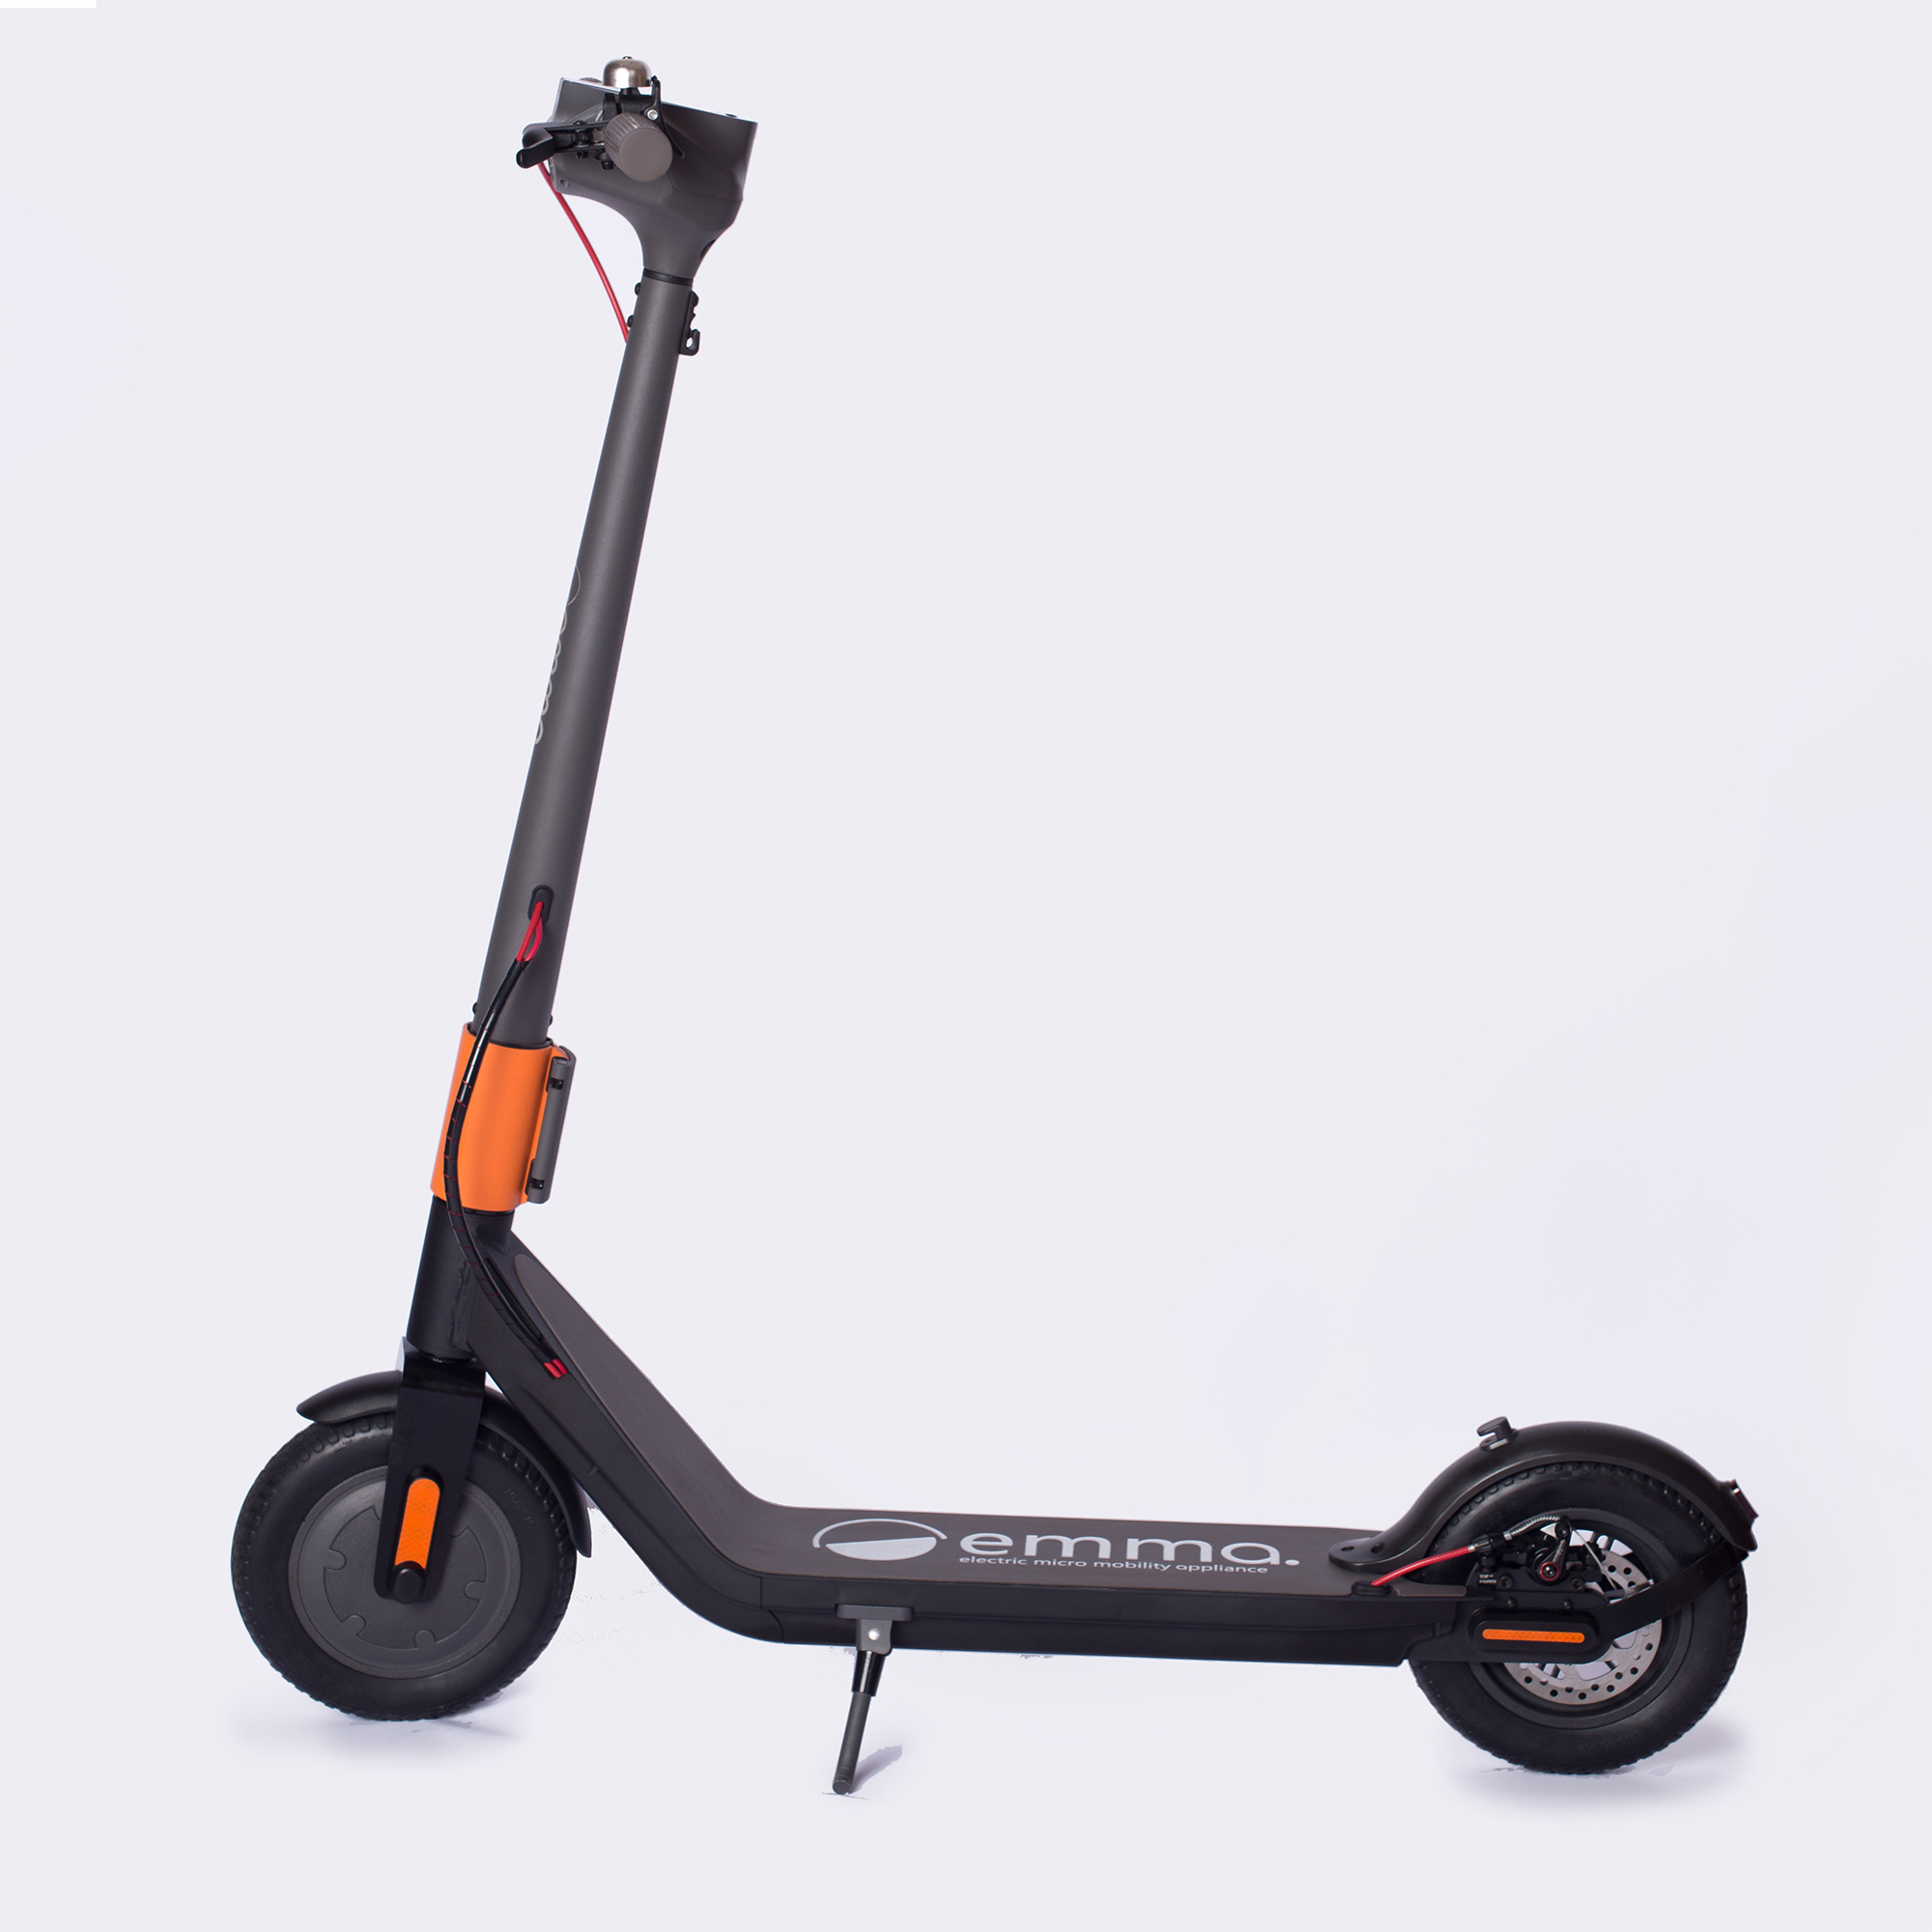 Mochila frontal XL para patinete eléctrico - Tienda online.